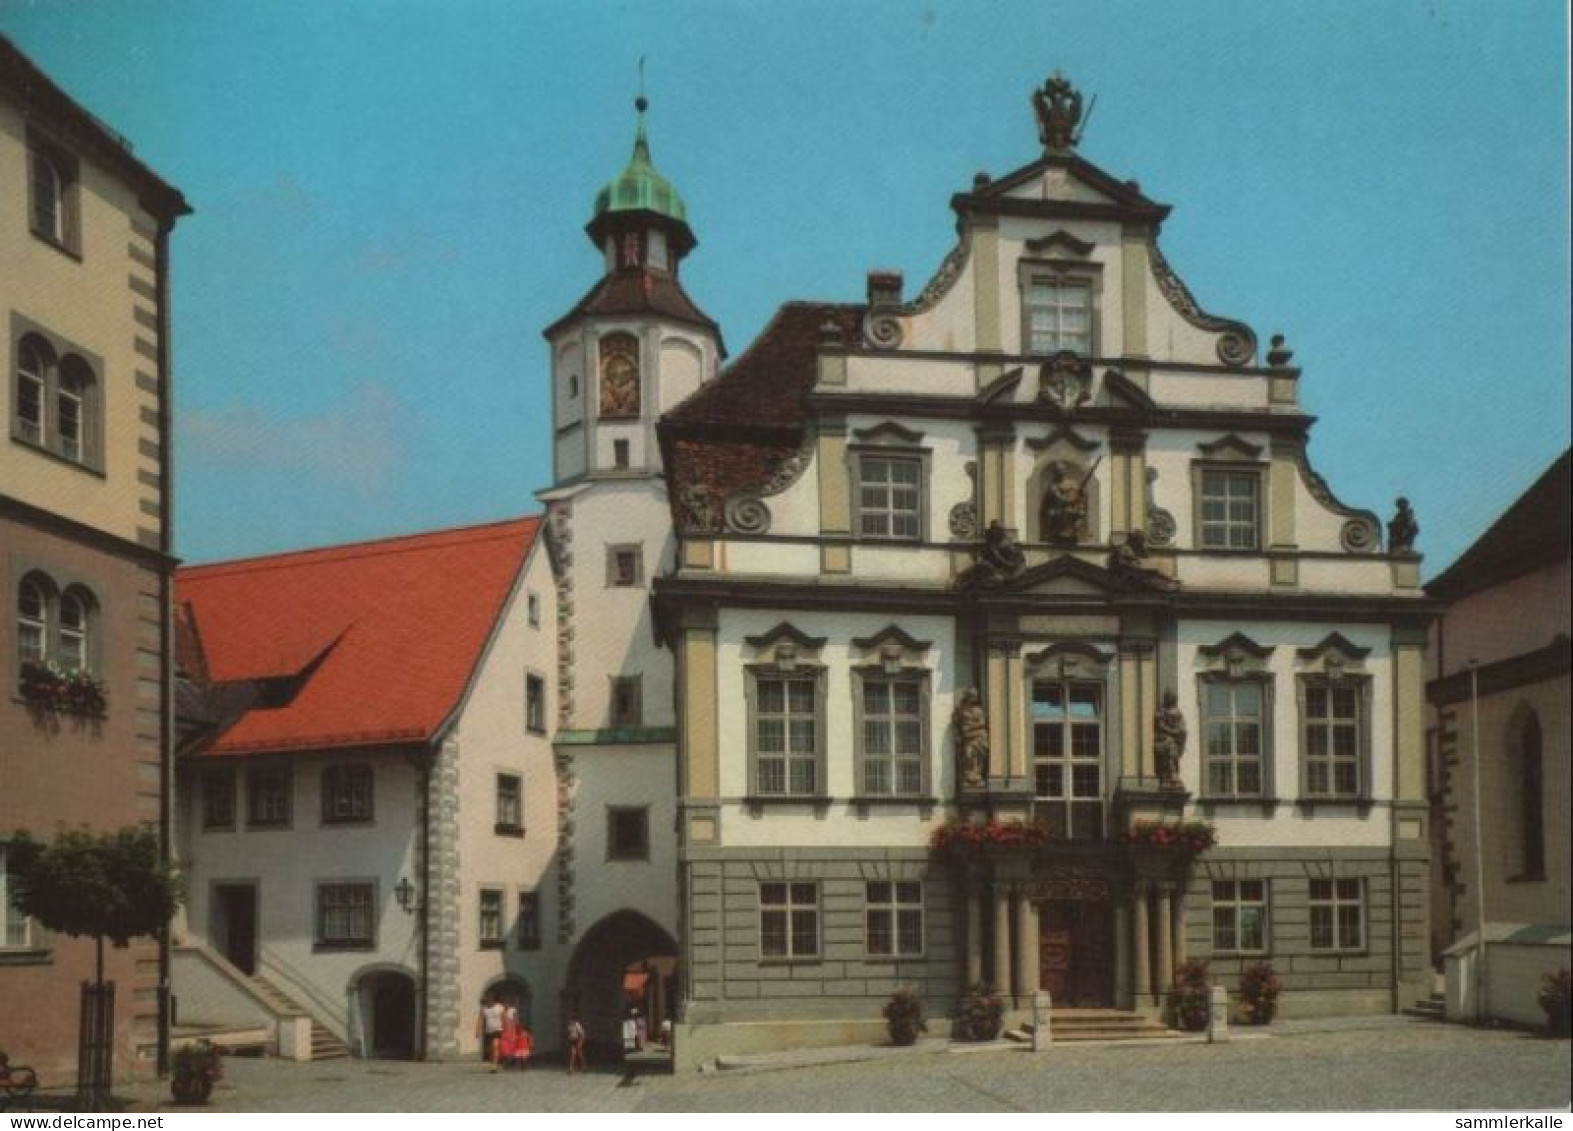 97663 - Wangen - Marktplatz Mit Rathaus - Ca. 1985 - Wangen I. Allg.